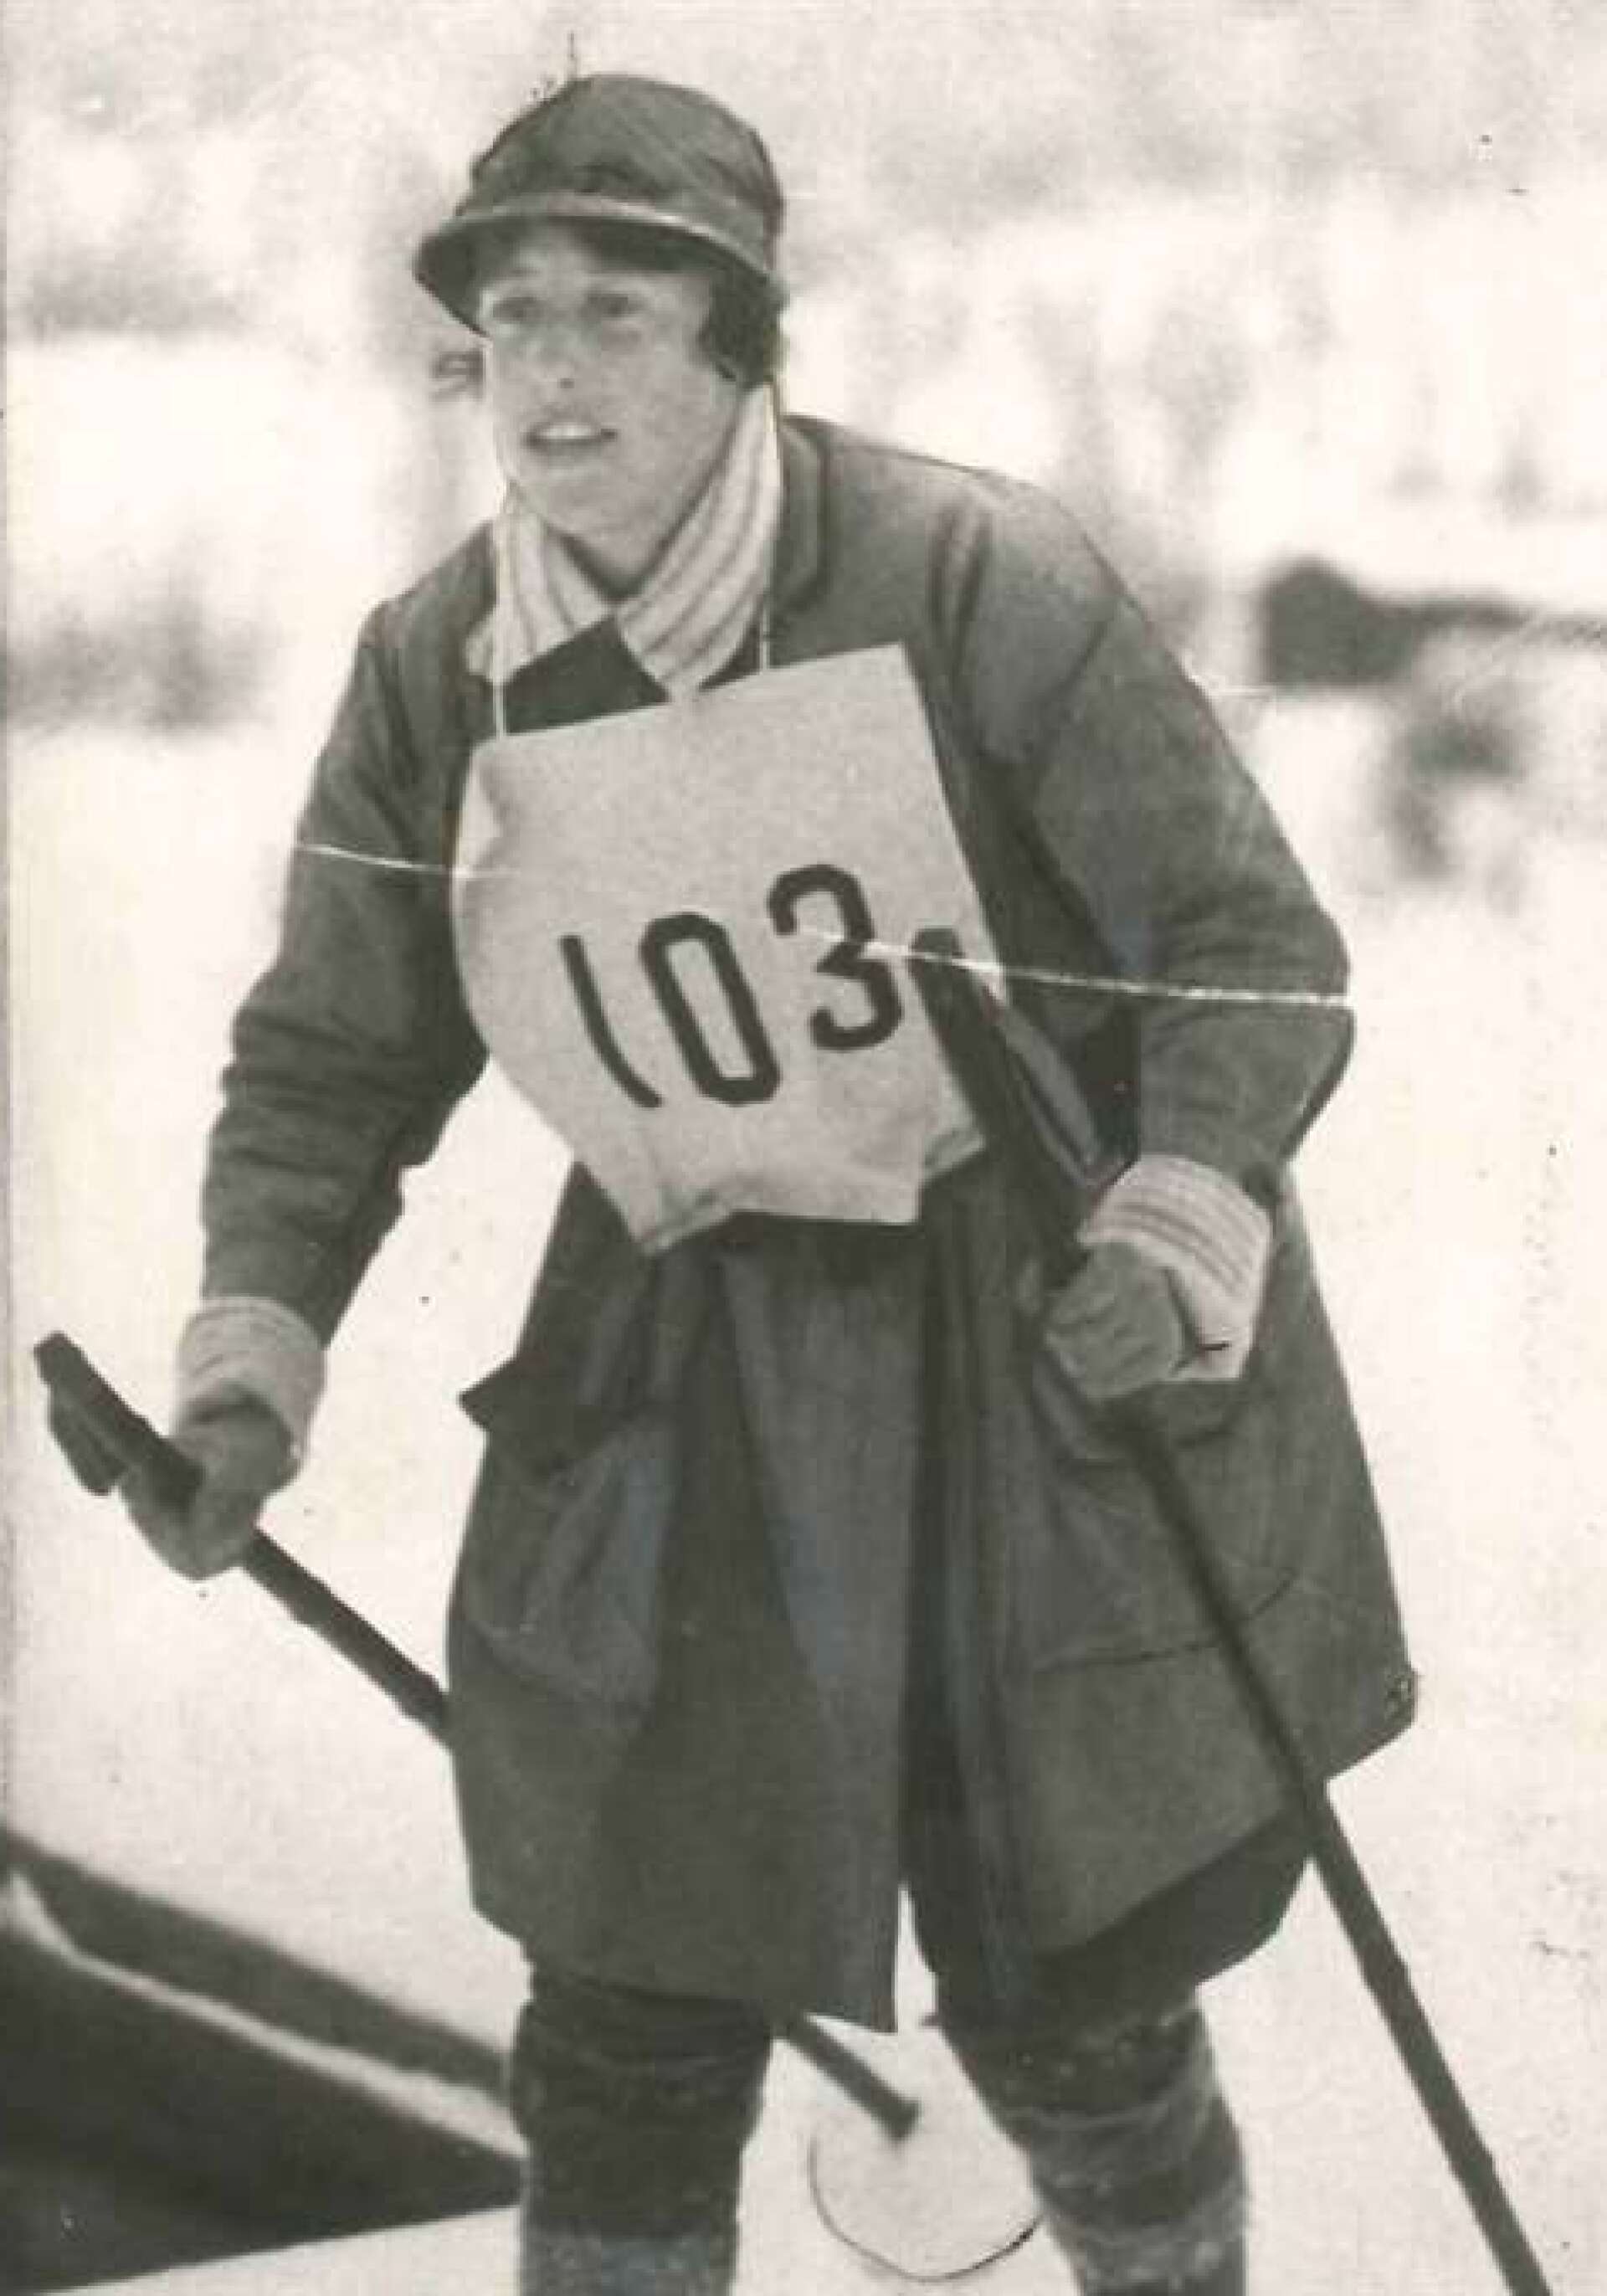  Margit Nordin under det historiska Vasaloppet.